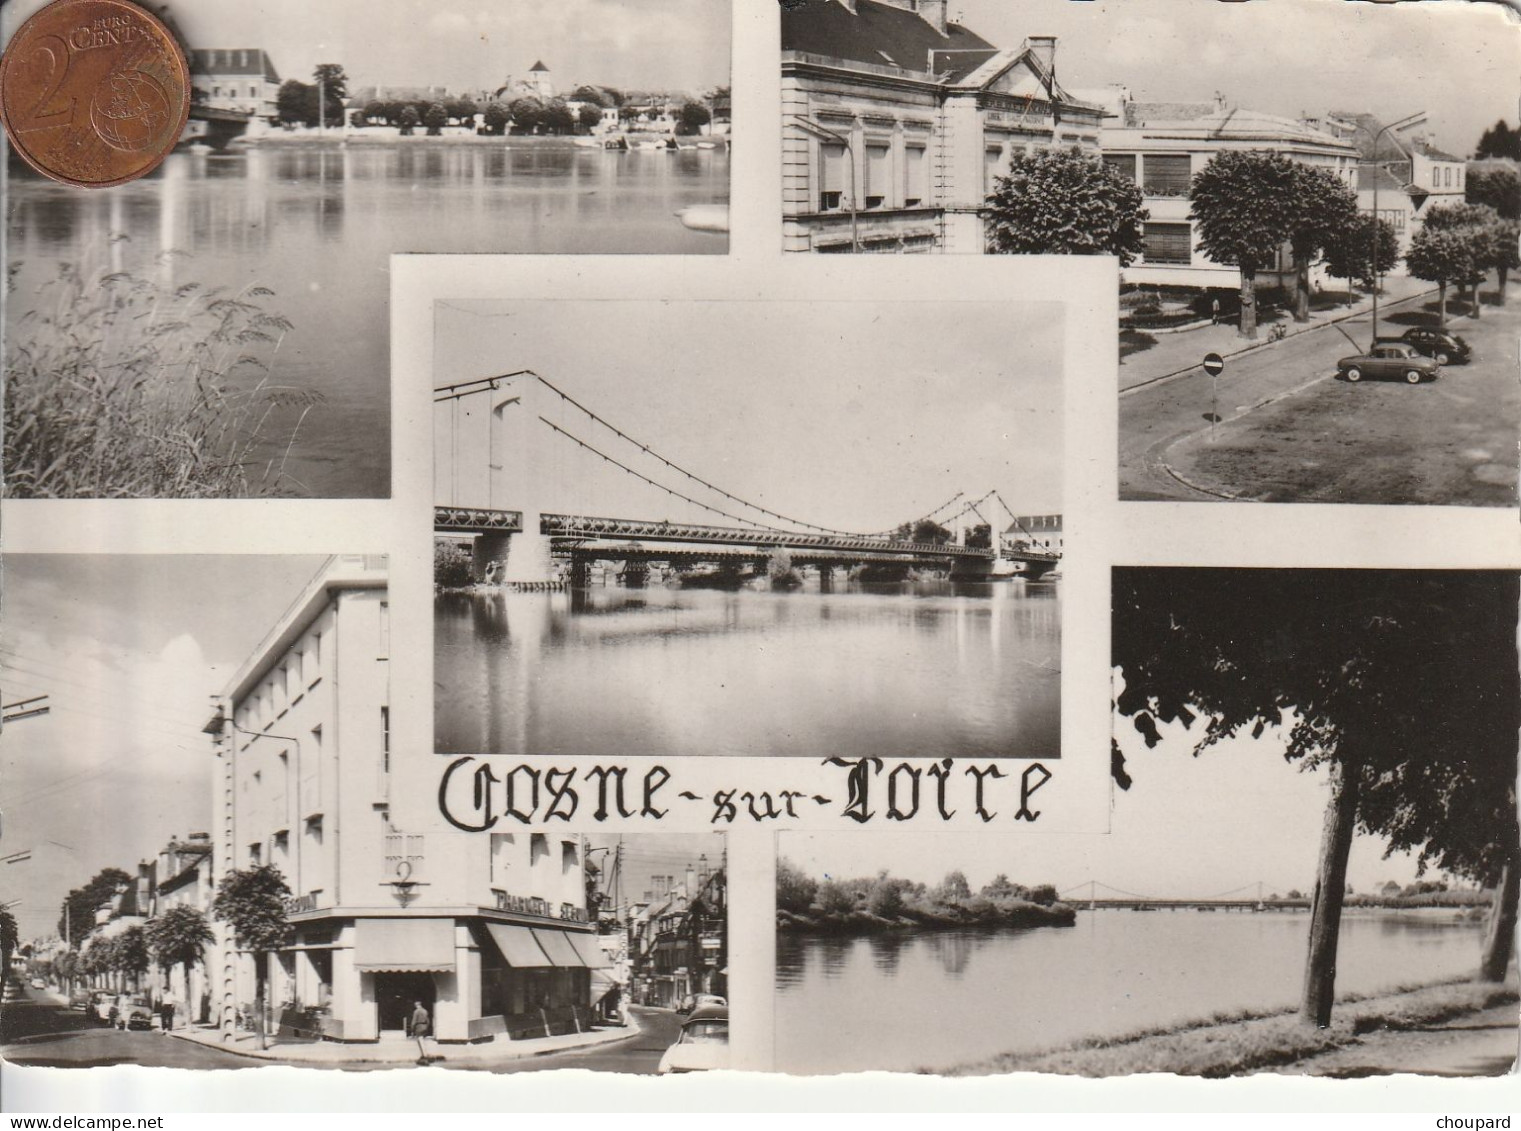 58  -  Carte Postale Semi Moderne De  COSNE SUR LOIRE    Multi Vues - Cosne Cours Sur Loire